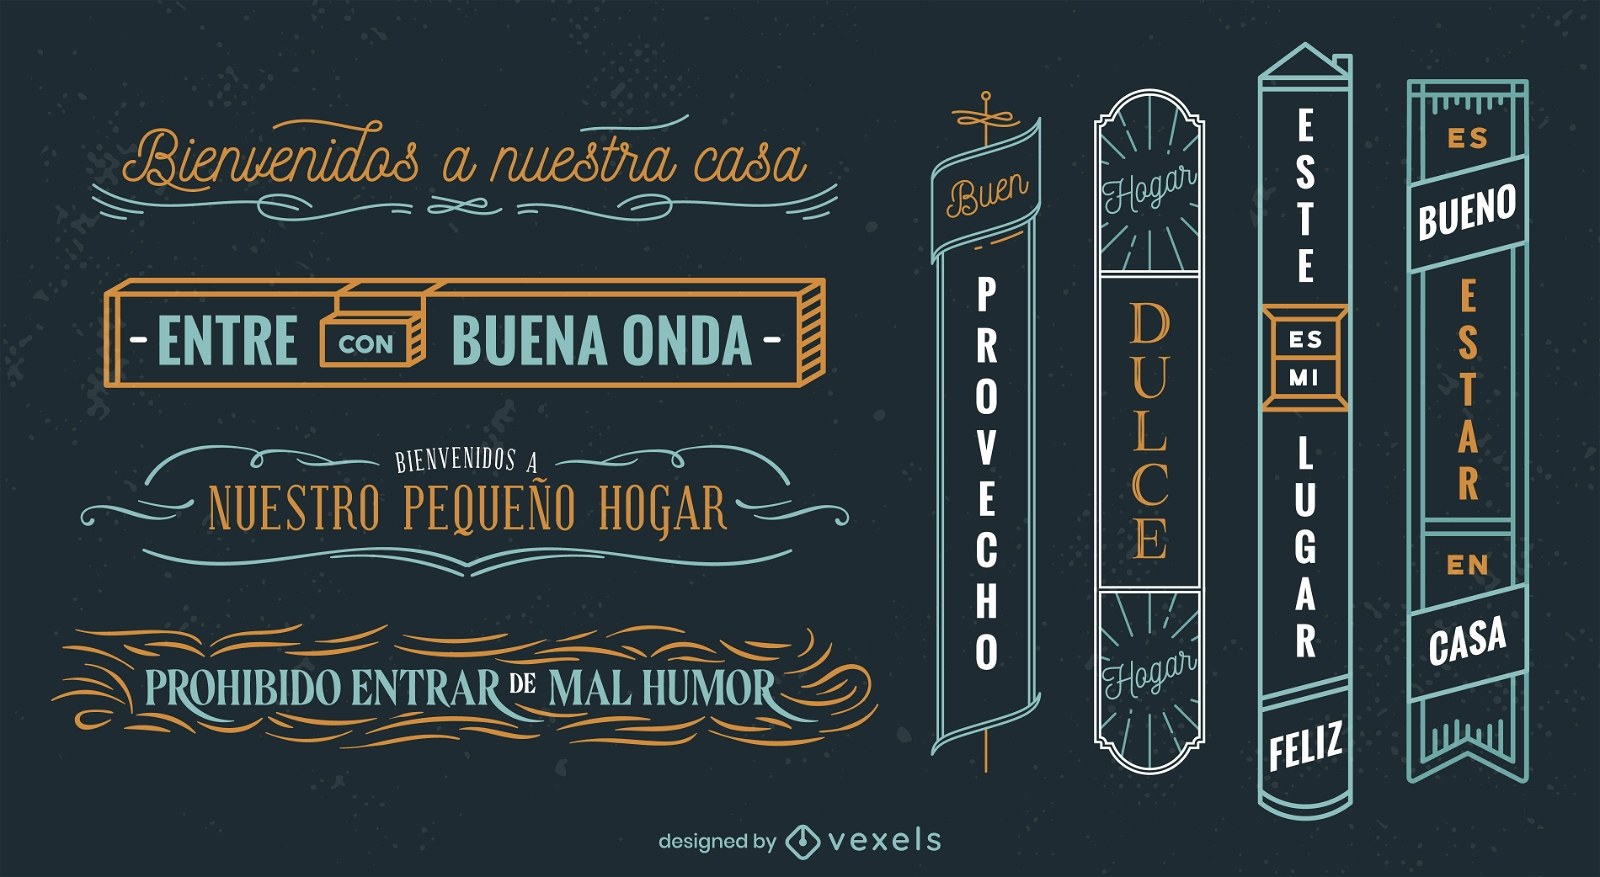 Zeichensatz mit spanischen Zitaten